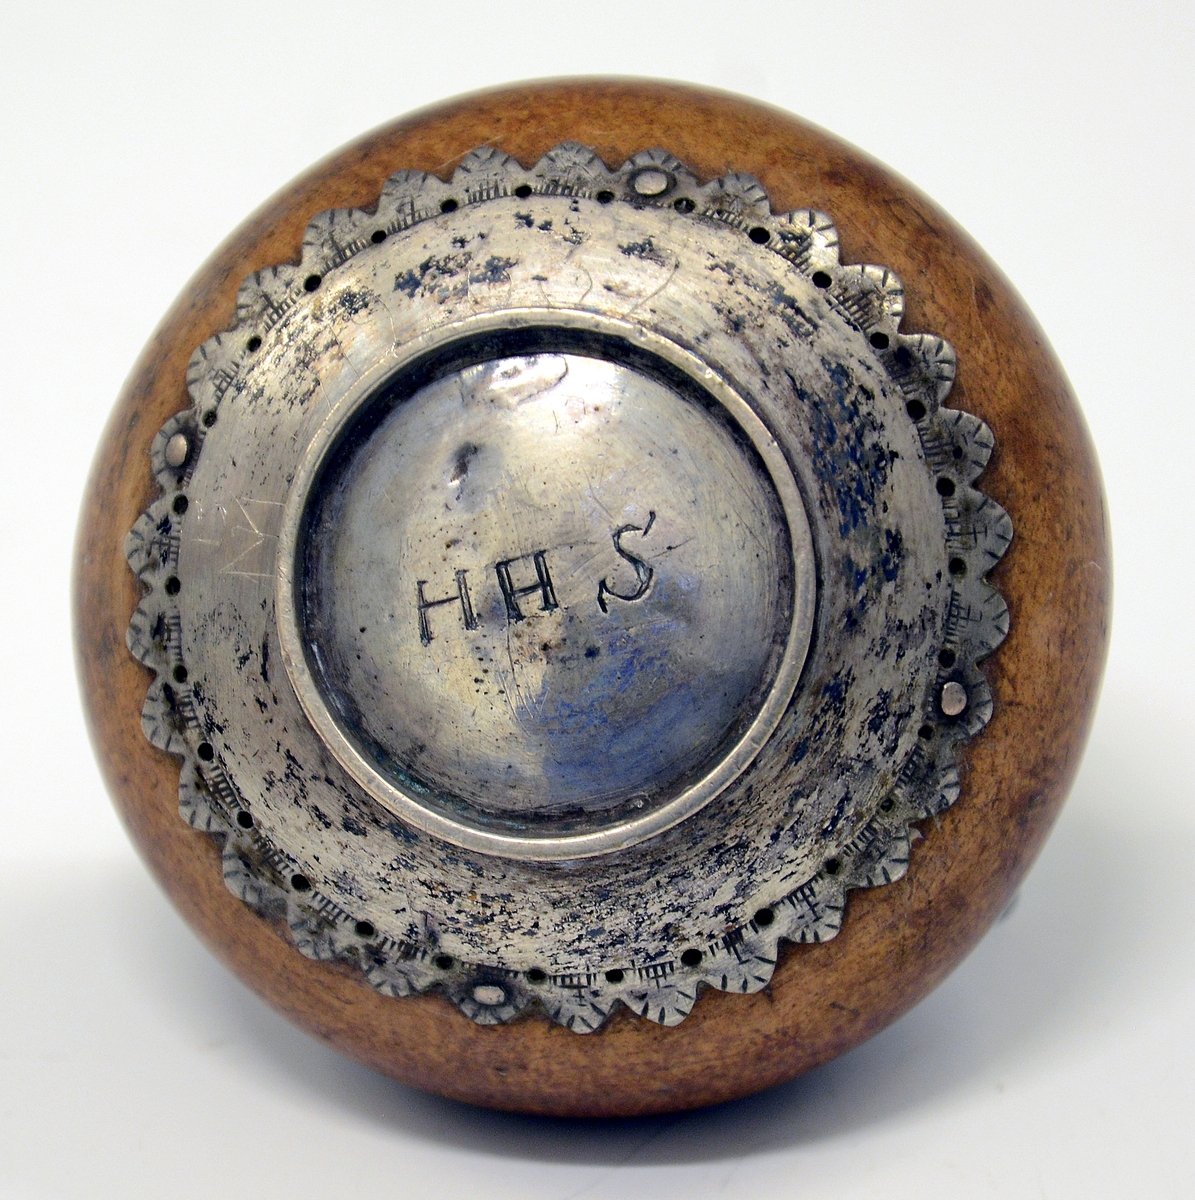 Fra protokollen: 1 snusflaske av træ med sølvbeslag, rund. Under bunden: H.H.S.
Gravert sølvbeslag på fot og topp, propp med lenke.